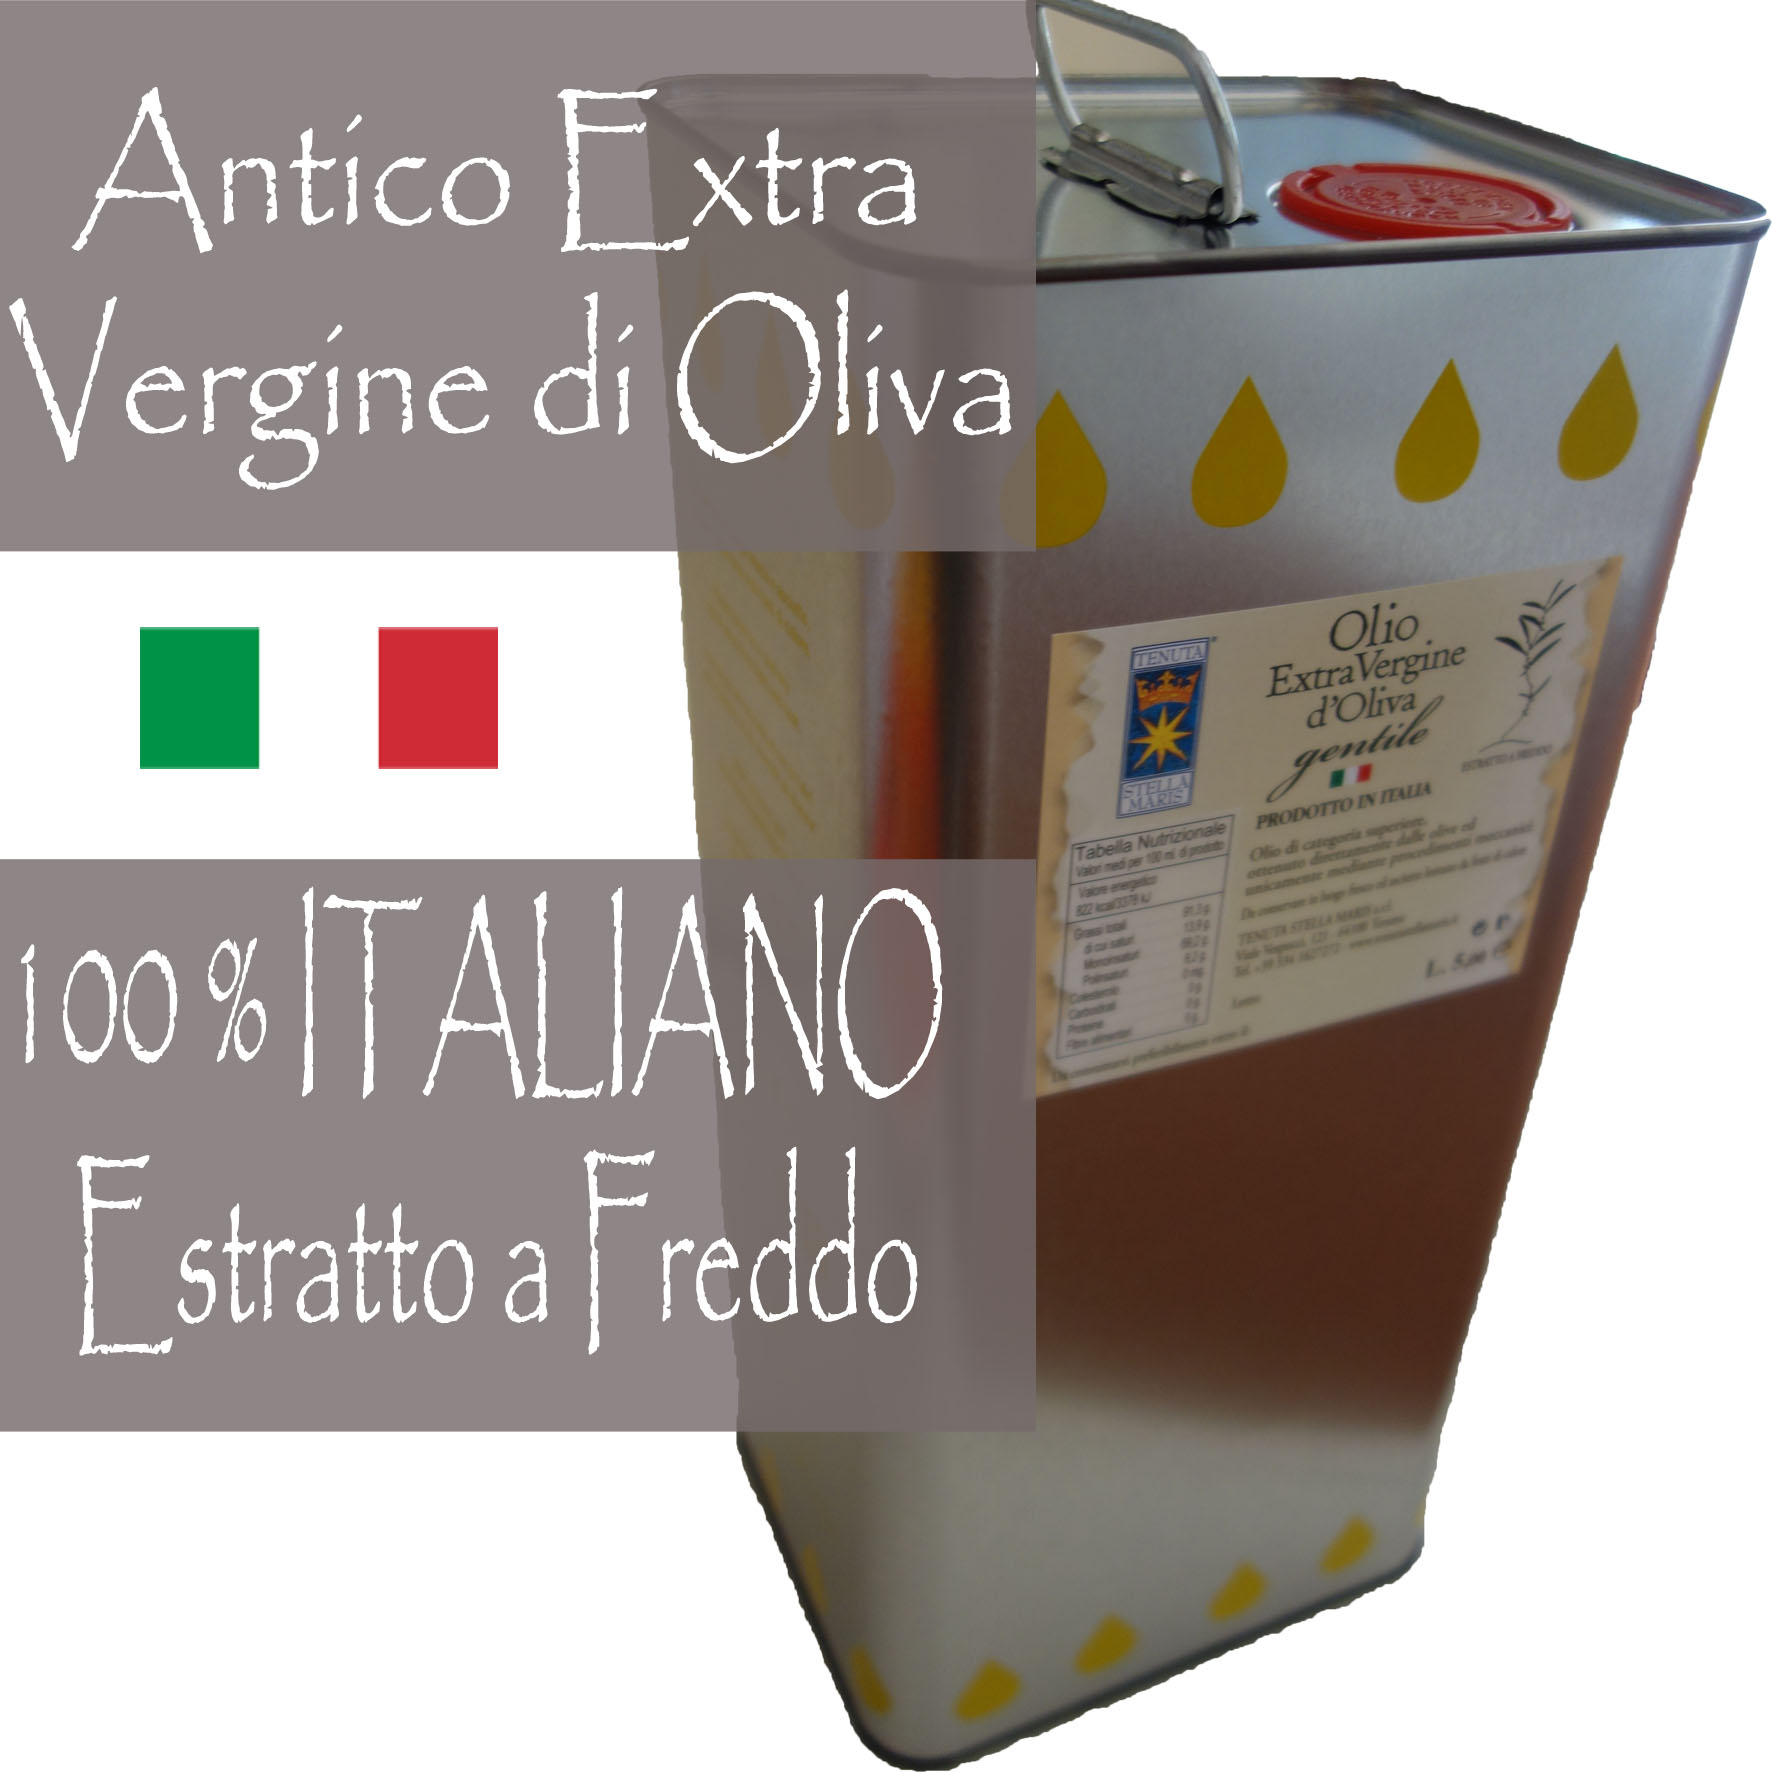 Antico Extra Vergine di Oliva - LATTINE/CANS/DOSEN - 5 Litri/Liters/Liter